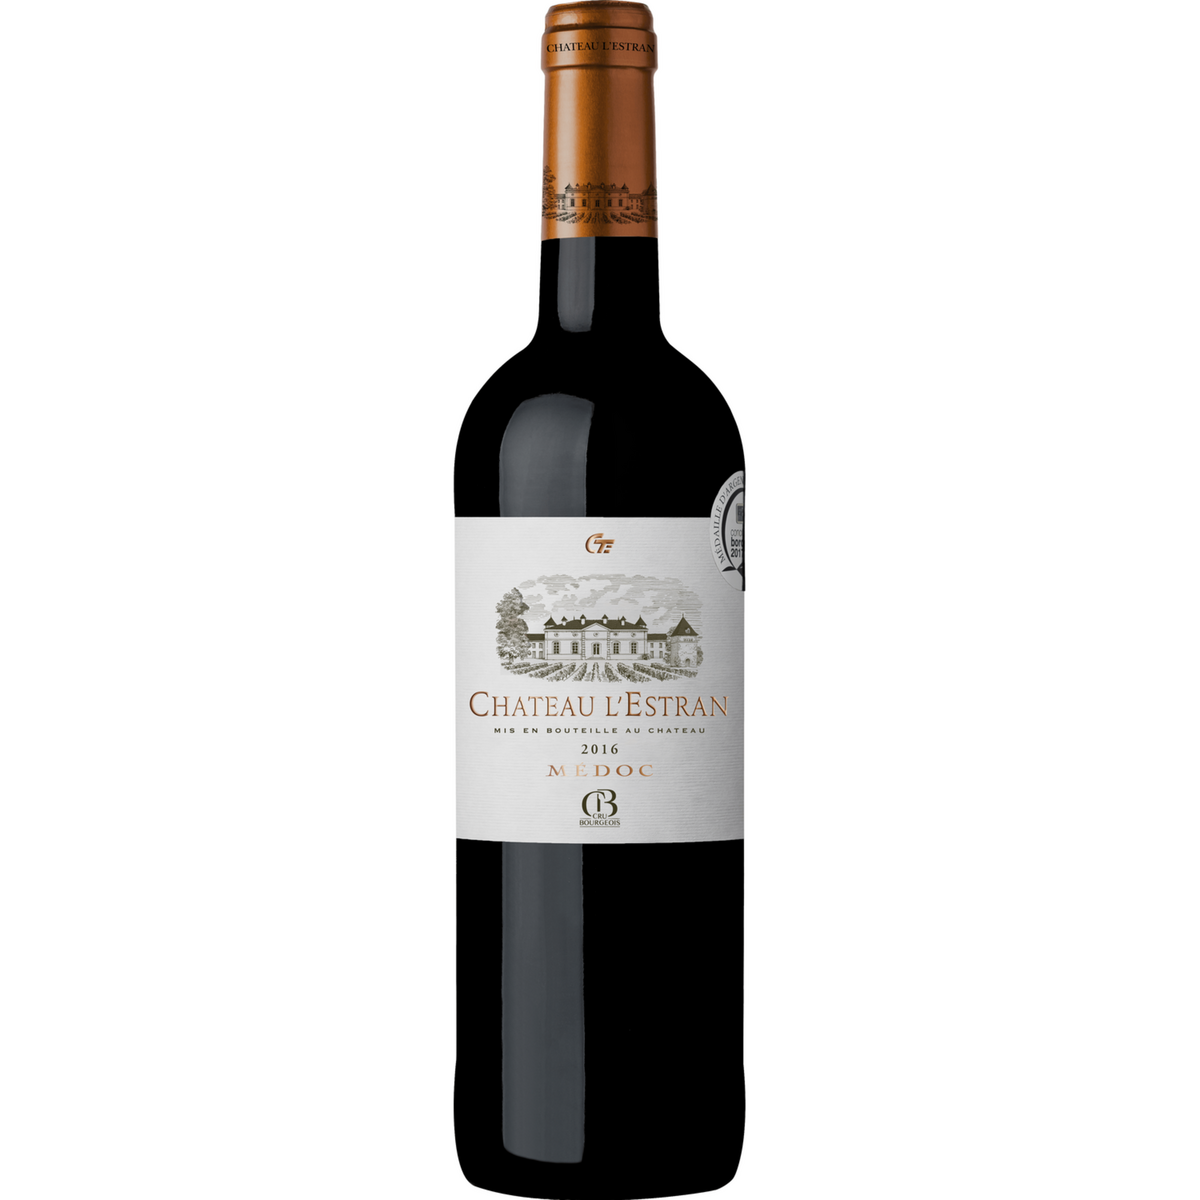 Vin rouge AOP Médoc Château l'Estran cru bourgeois 2016 75cl